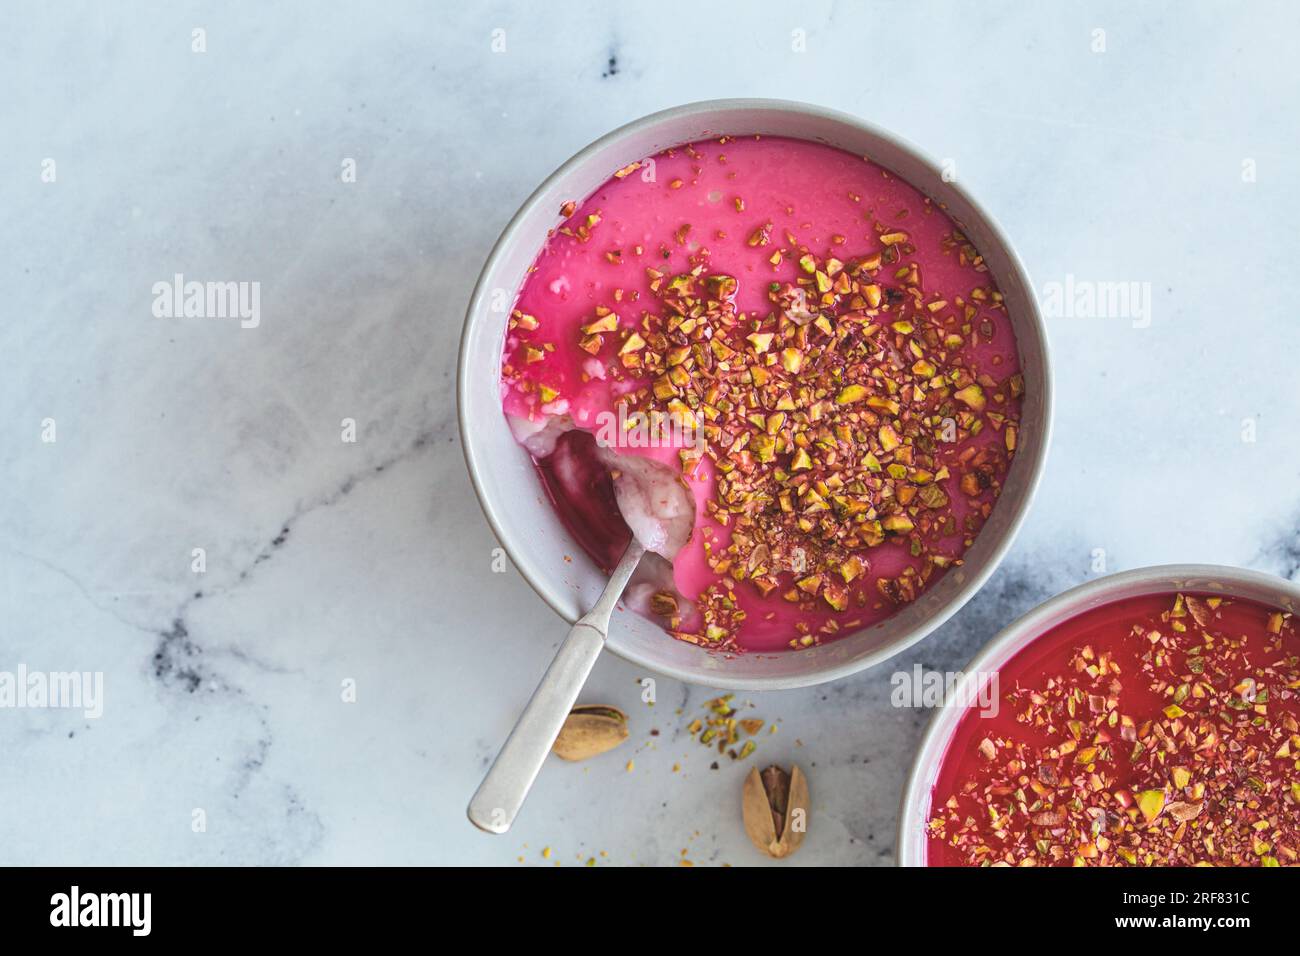 Malabi traditionelles arabisches Dessert. Milchpudding mit rosafarbenem Sirup und Pistazien in grauer Schüssel, Draufsicht auf weißem Marmorhintergrund. Stockfoto